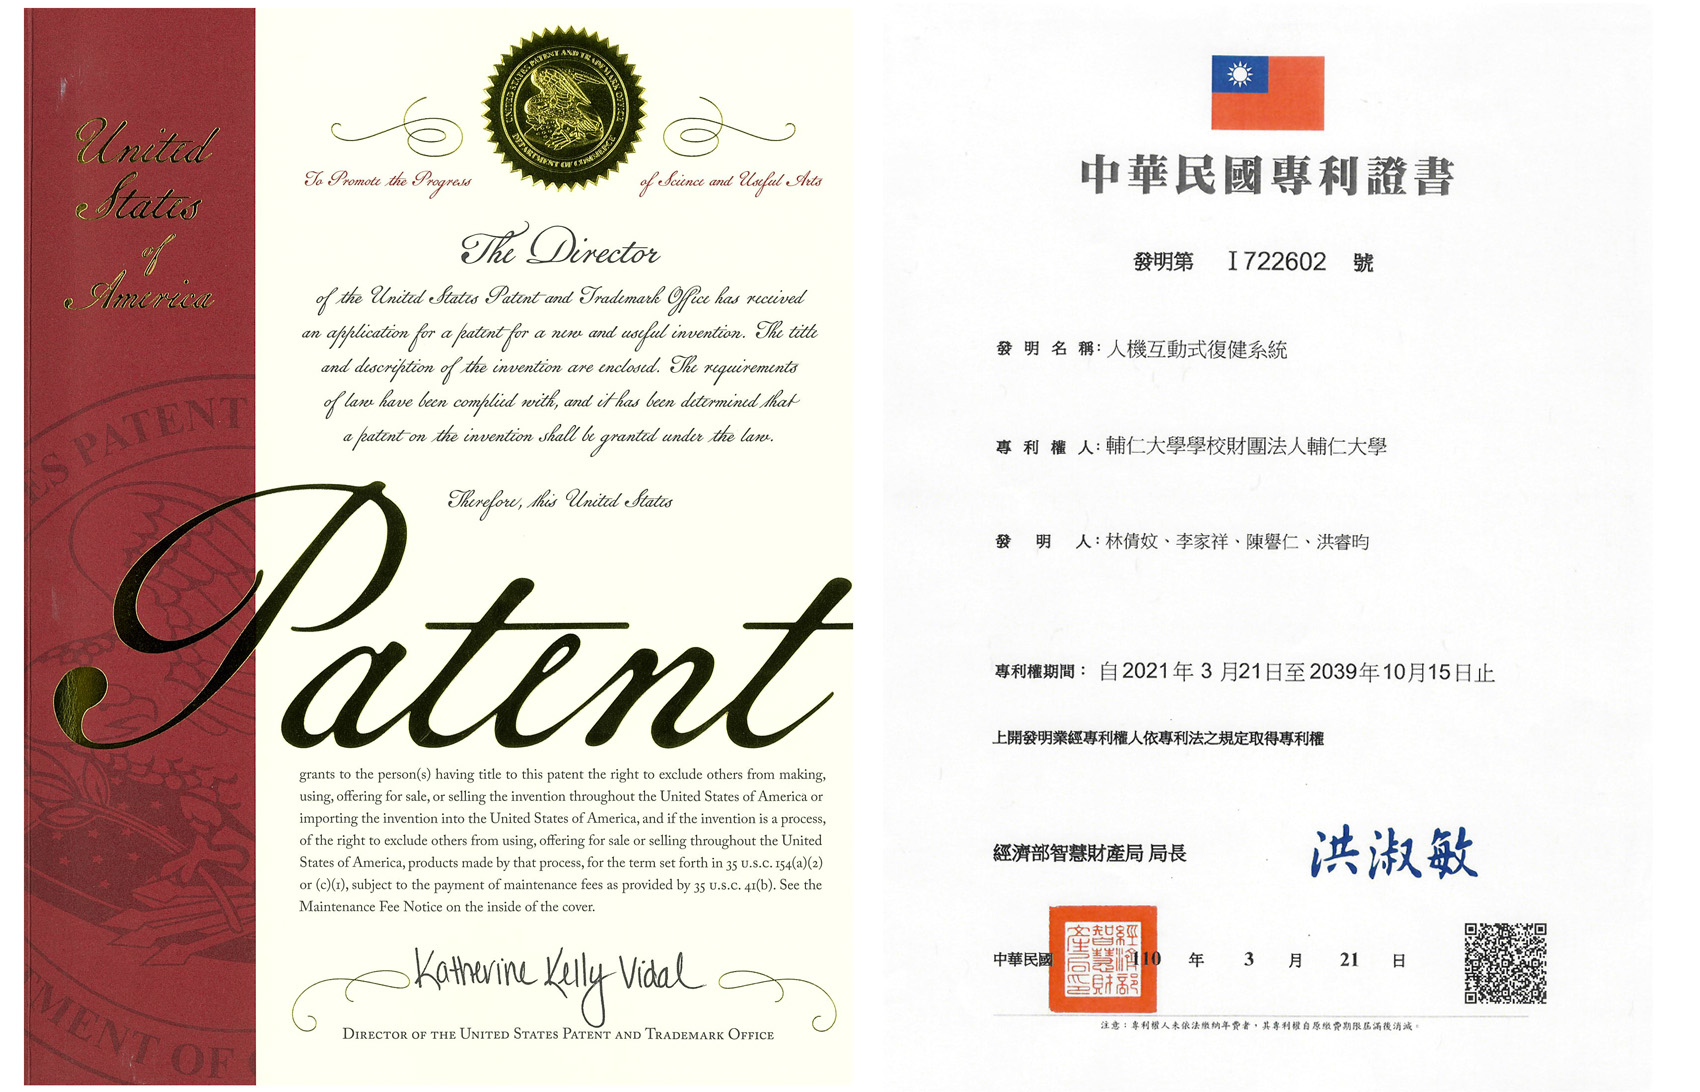 創意設計中心 美國台灣發明專利-醫學科技藝術